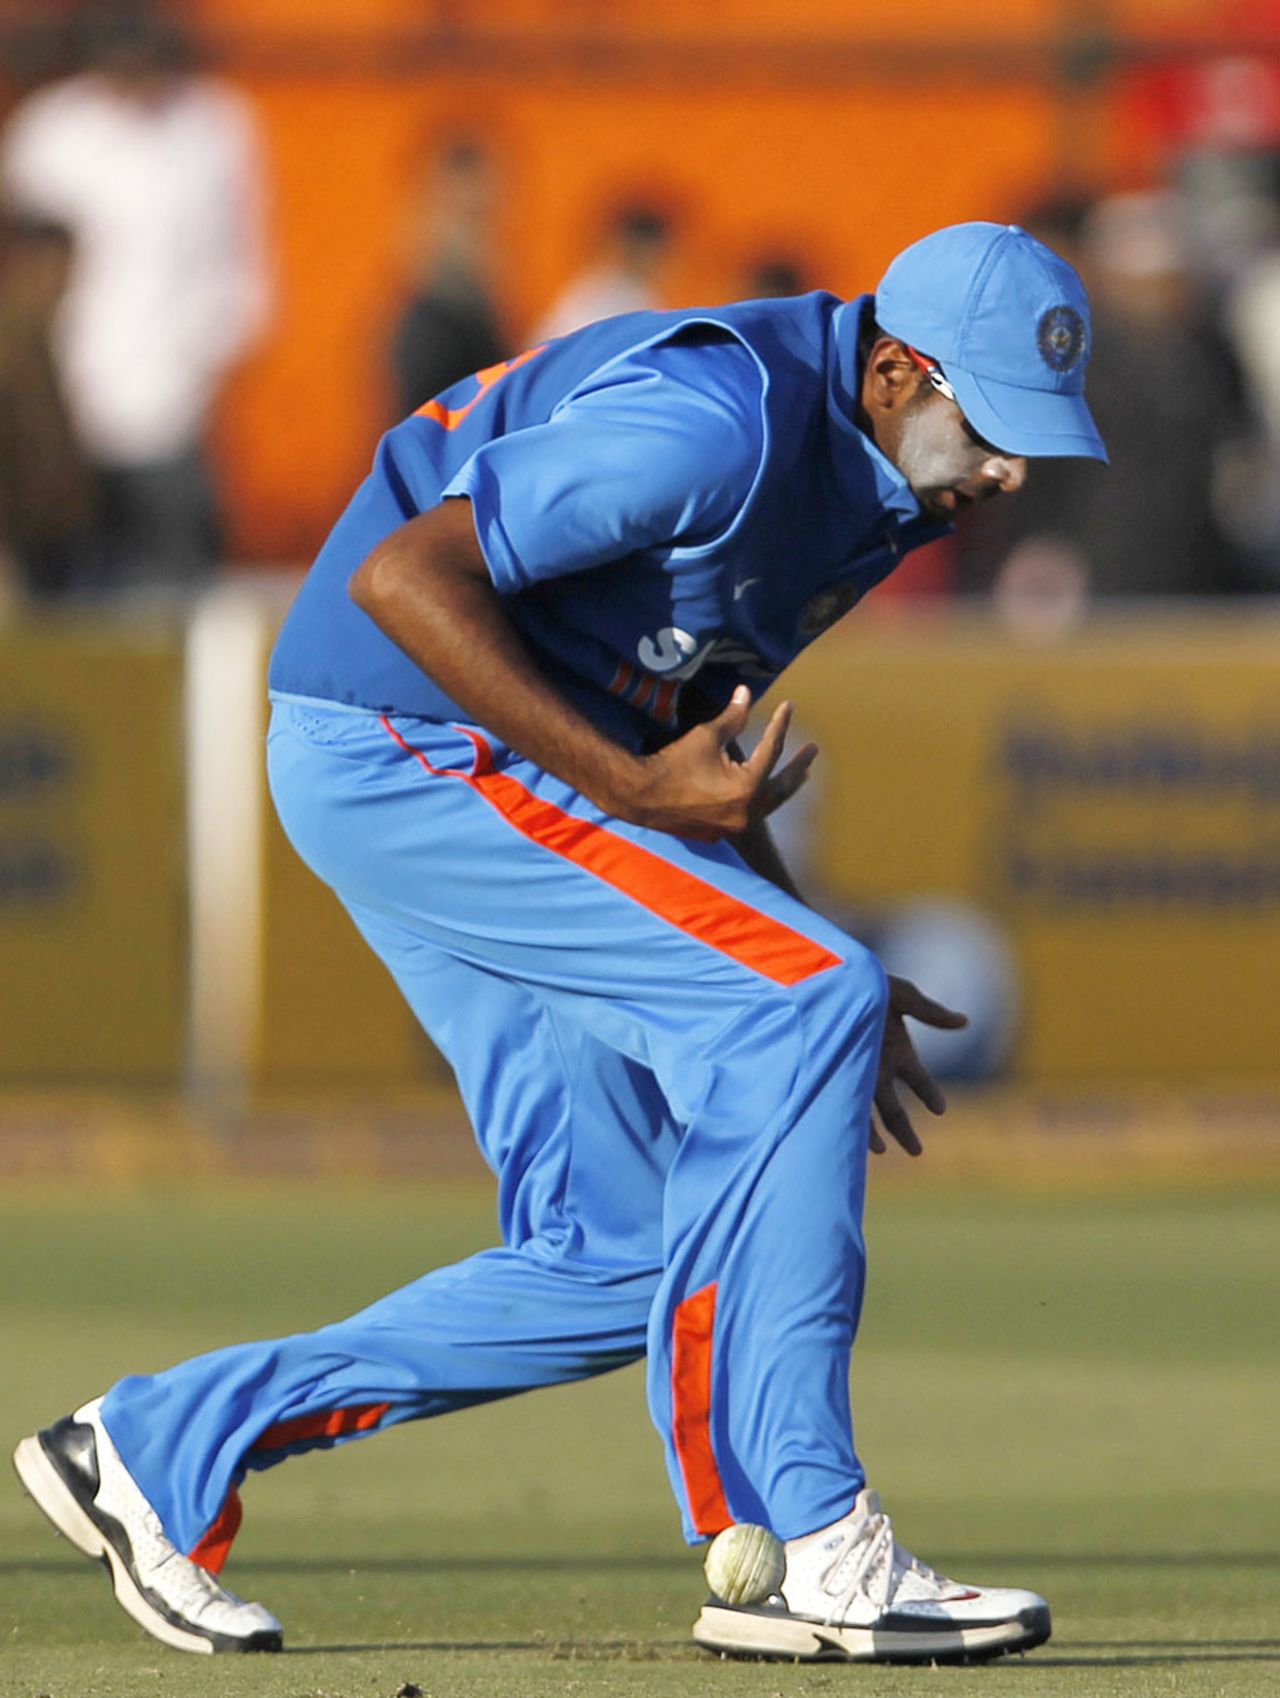 R Ashwin spills a catch, India v New Zealand, 2nd ODI, Jaipur, December 1, 2010